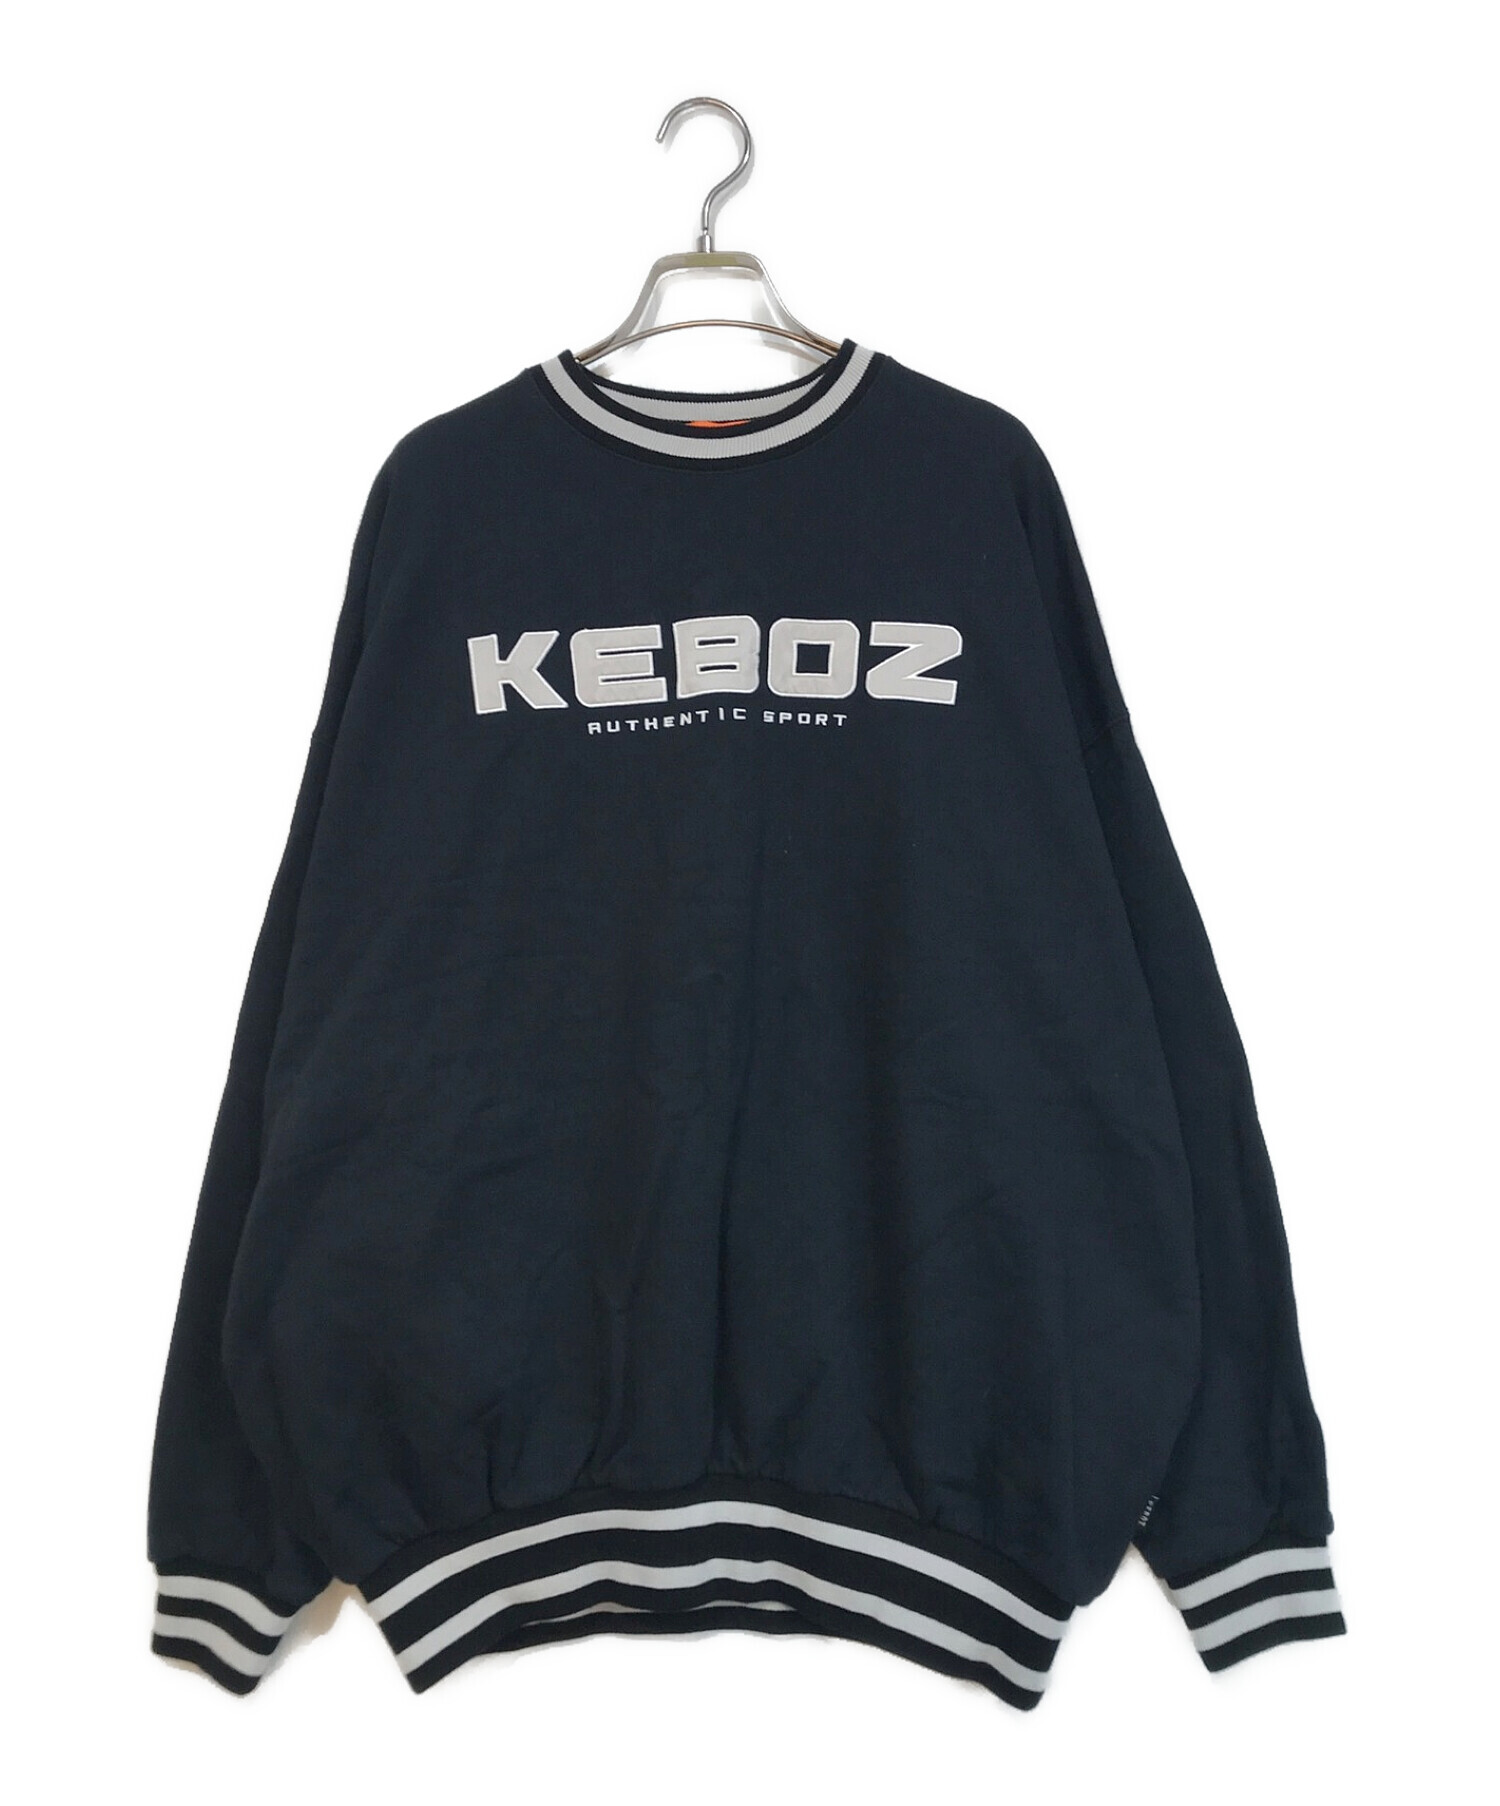 KEBOZ (ケボズ) ビッグロゴスウェット ブラック サイズ:M